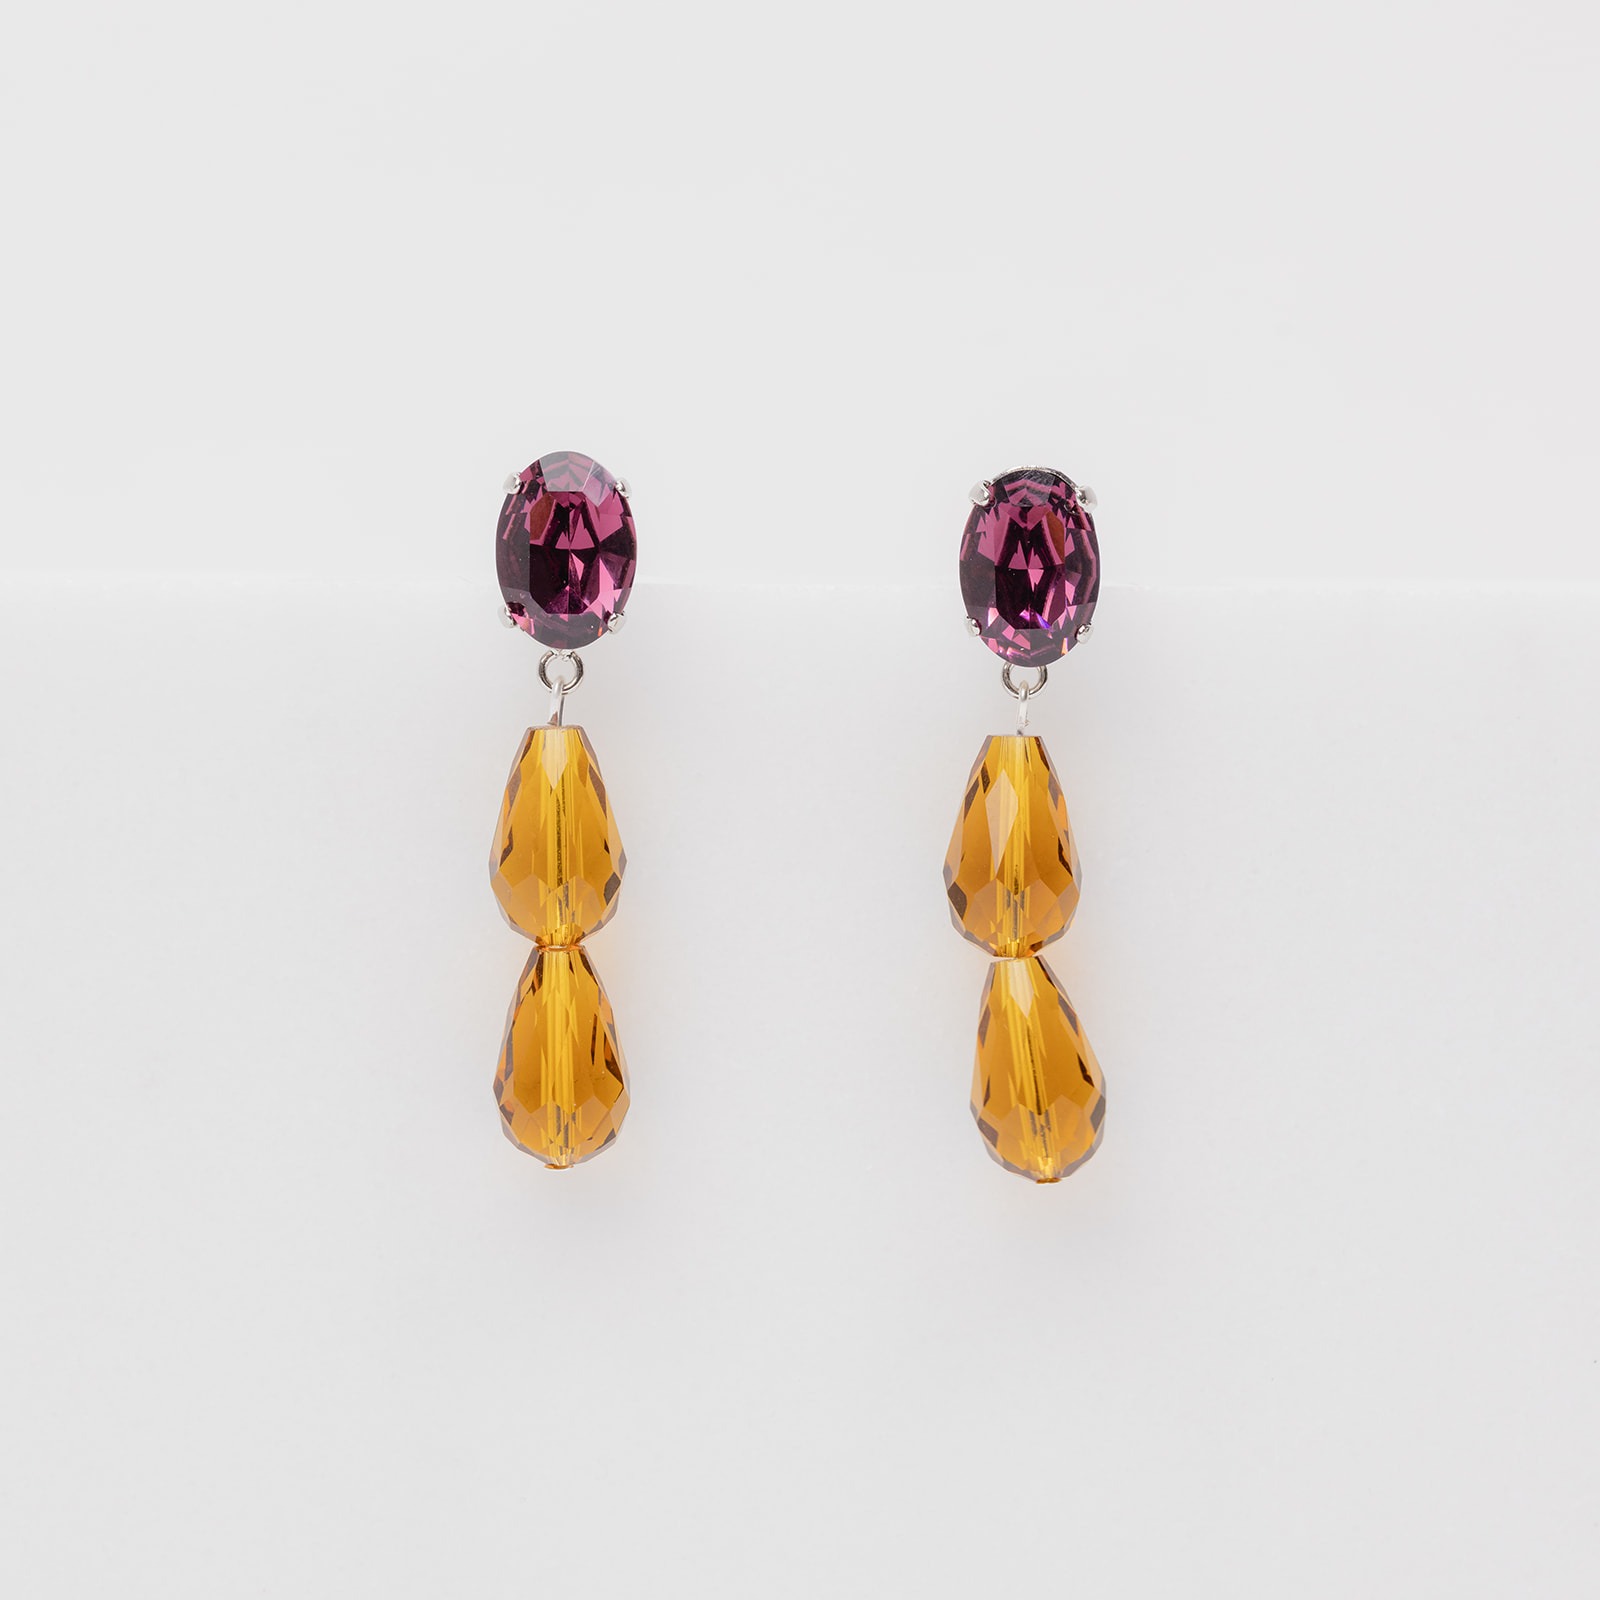 Lolita purple earrings